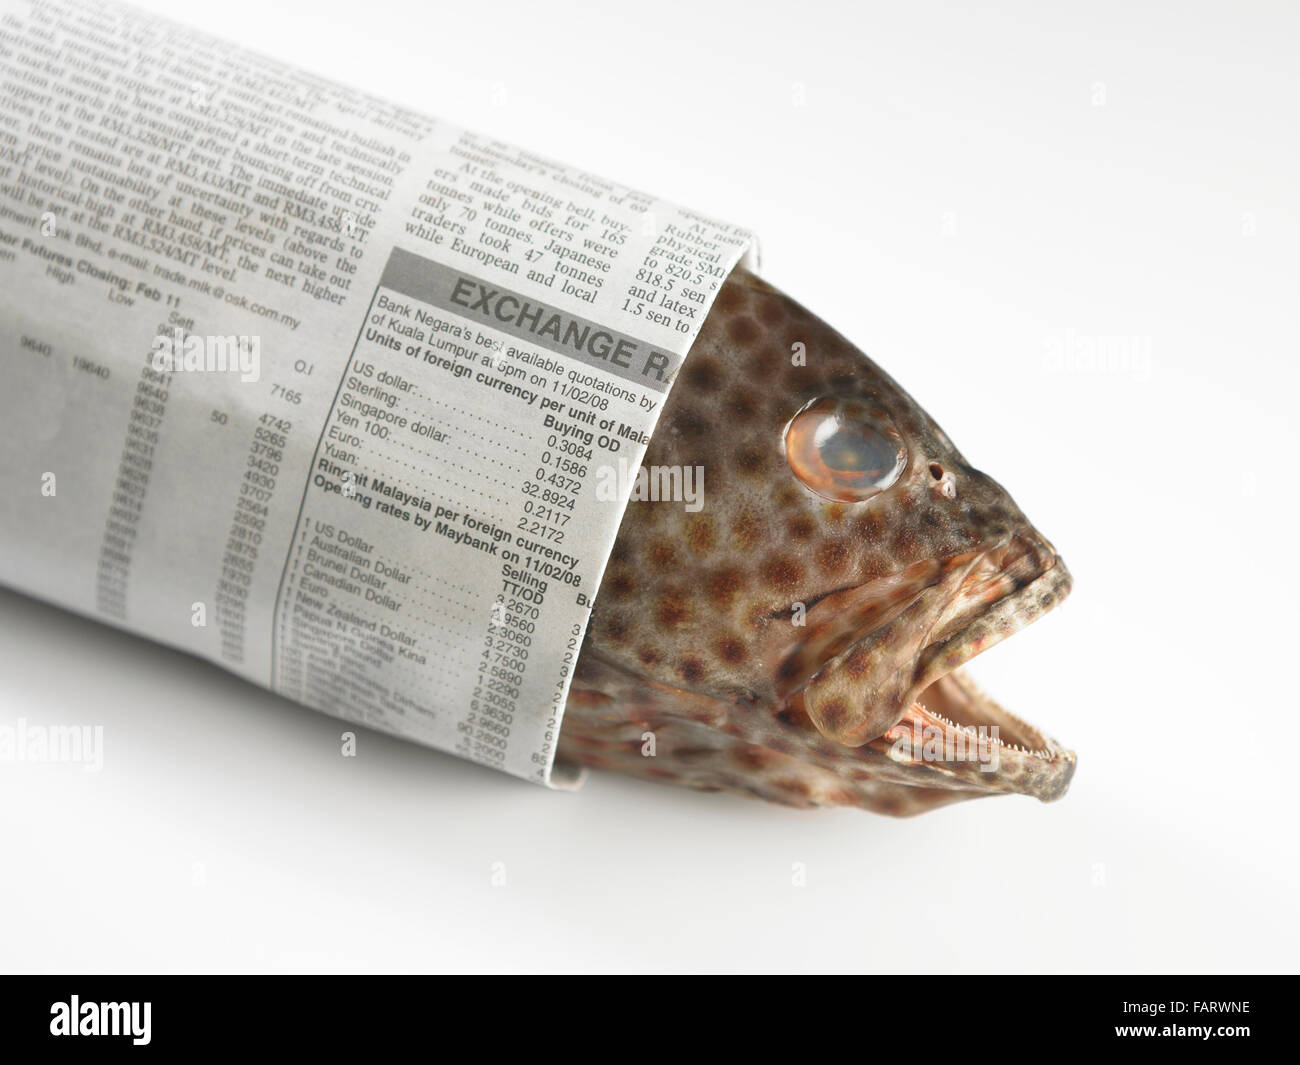 Здесь рыбу заворачивали. Рыба завернутая в газету. Завернутая рыба. Во что заворачивают рыбу. Газета в которую рыбу заворачивали.